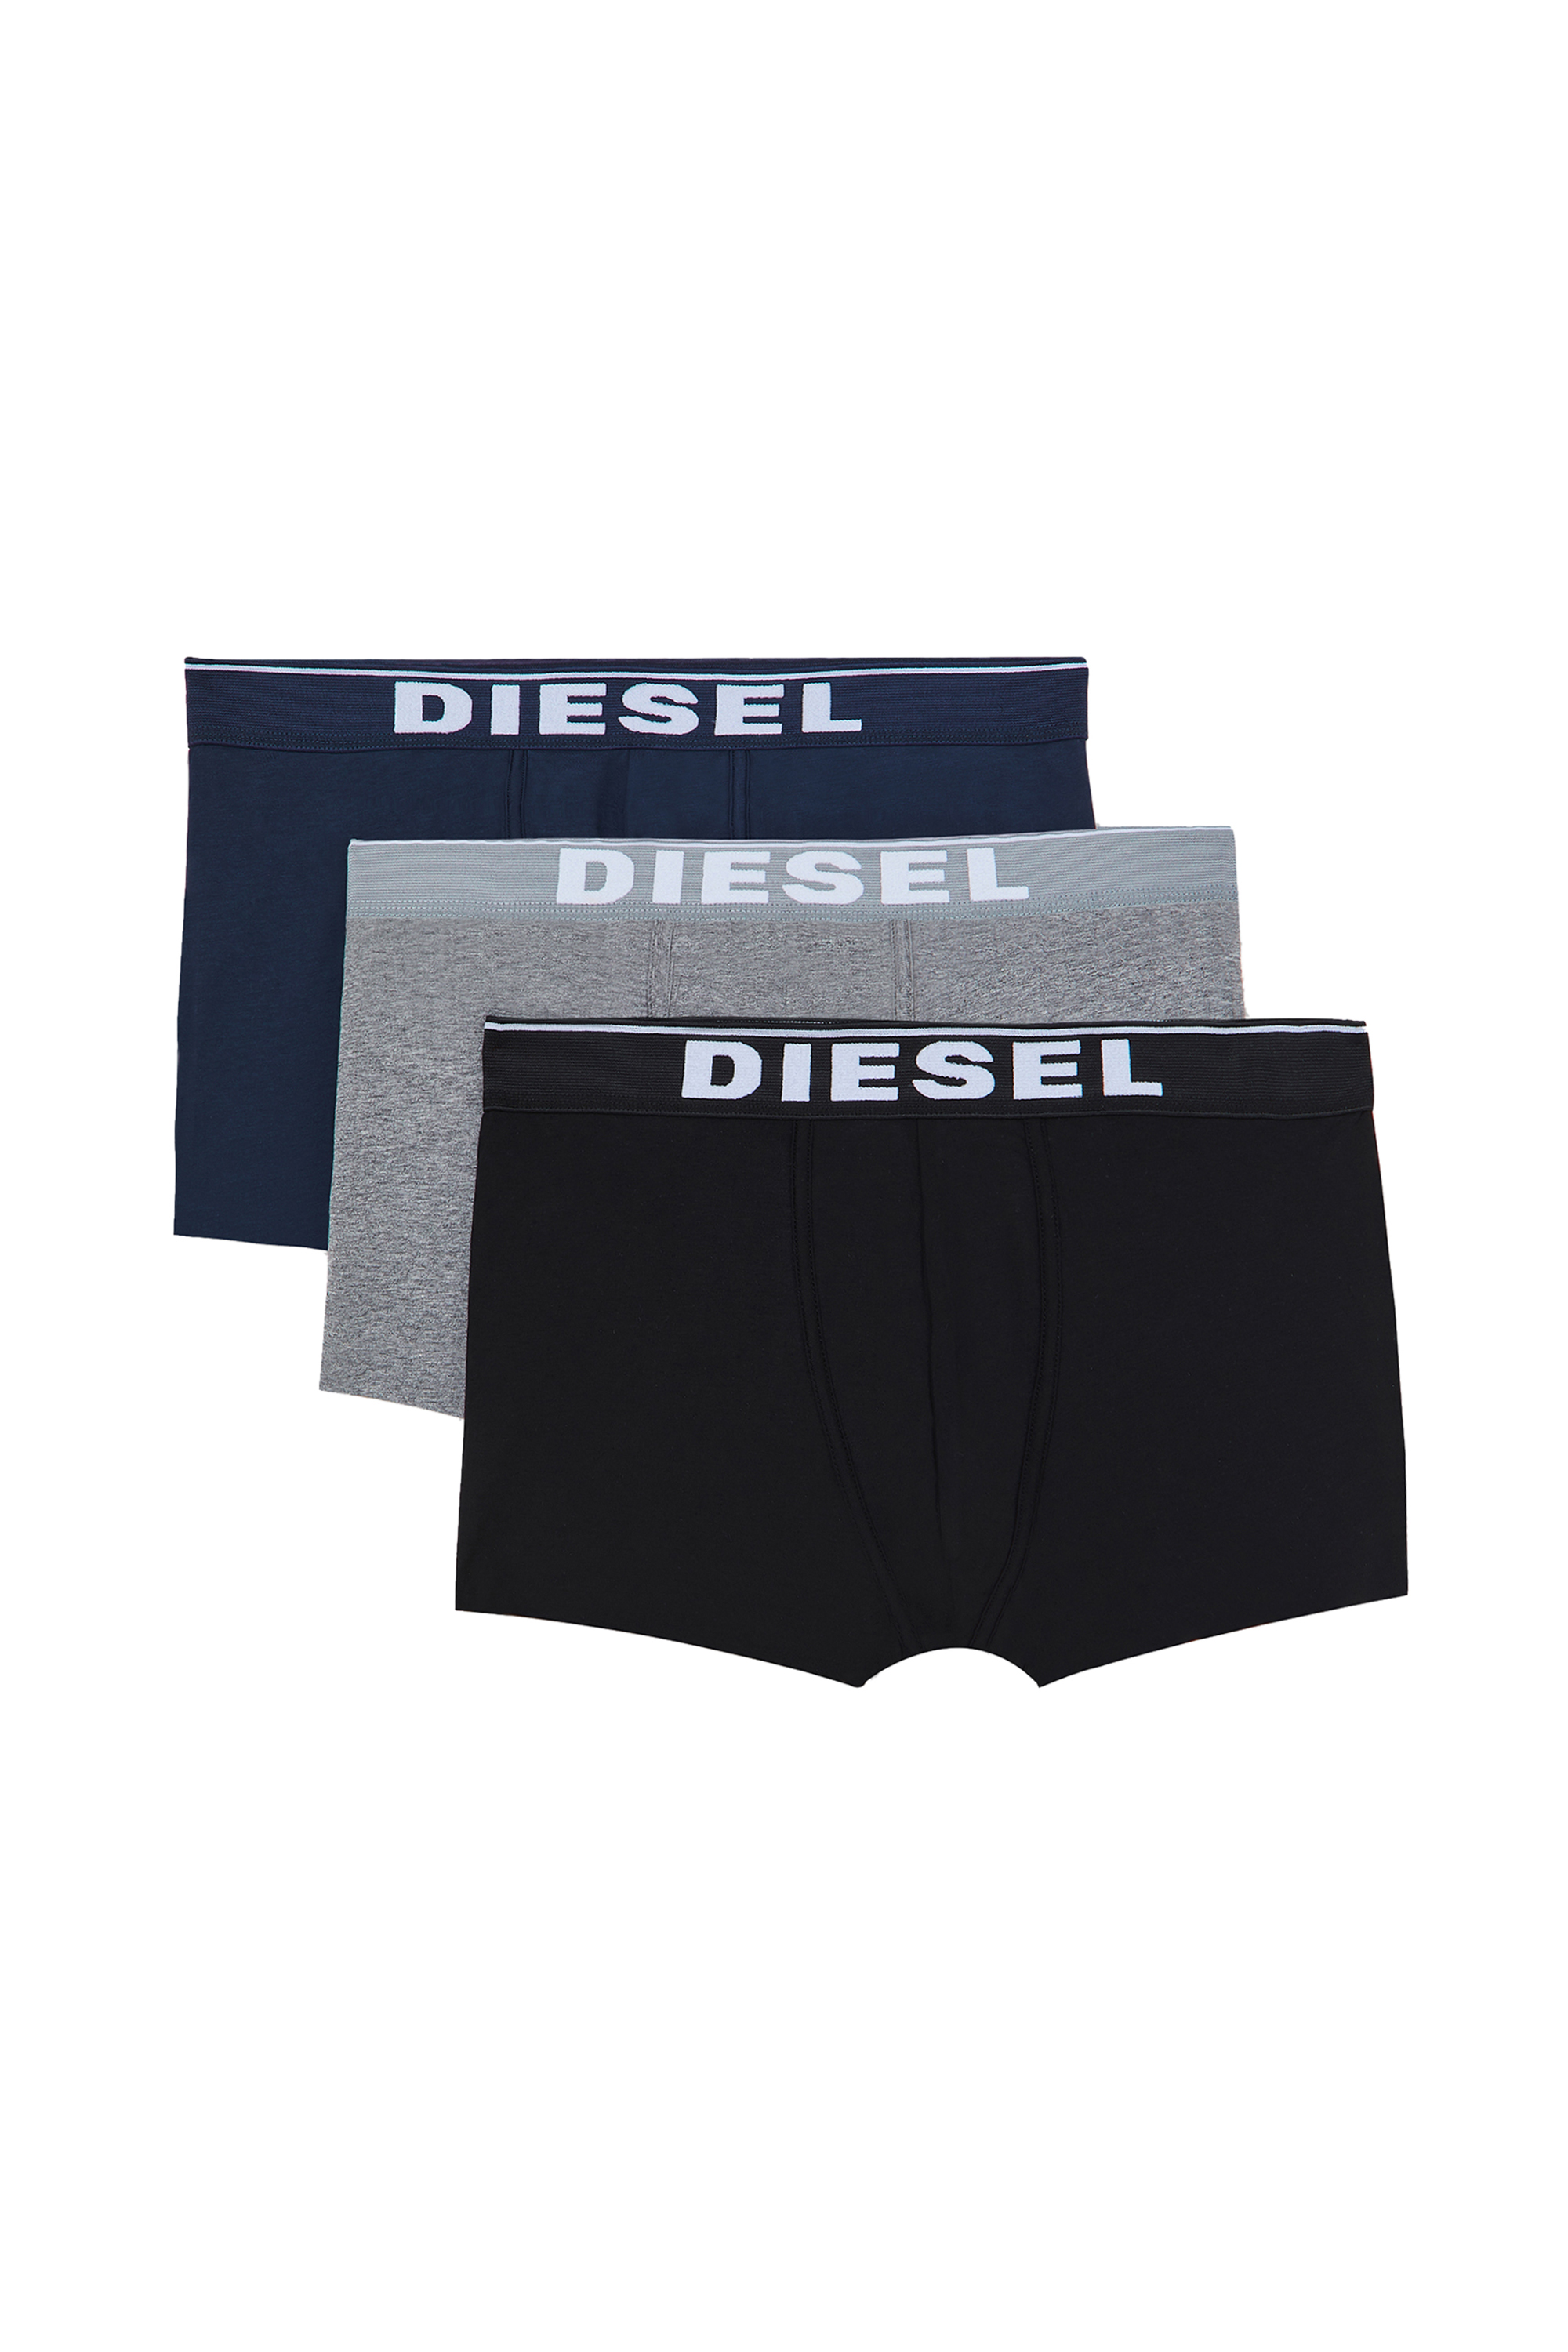 Diesel - UMBX-DAMIENTHREEPACK, Multicolor/Black - Image 1